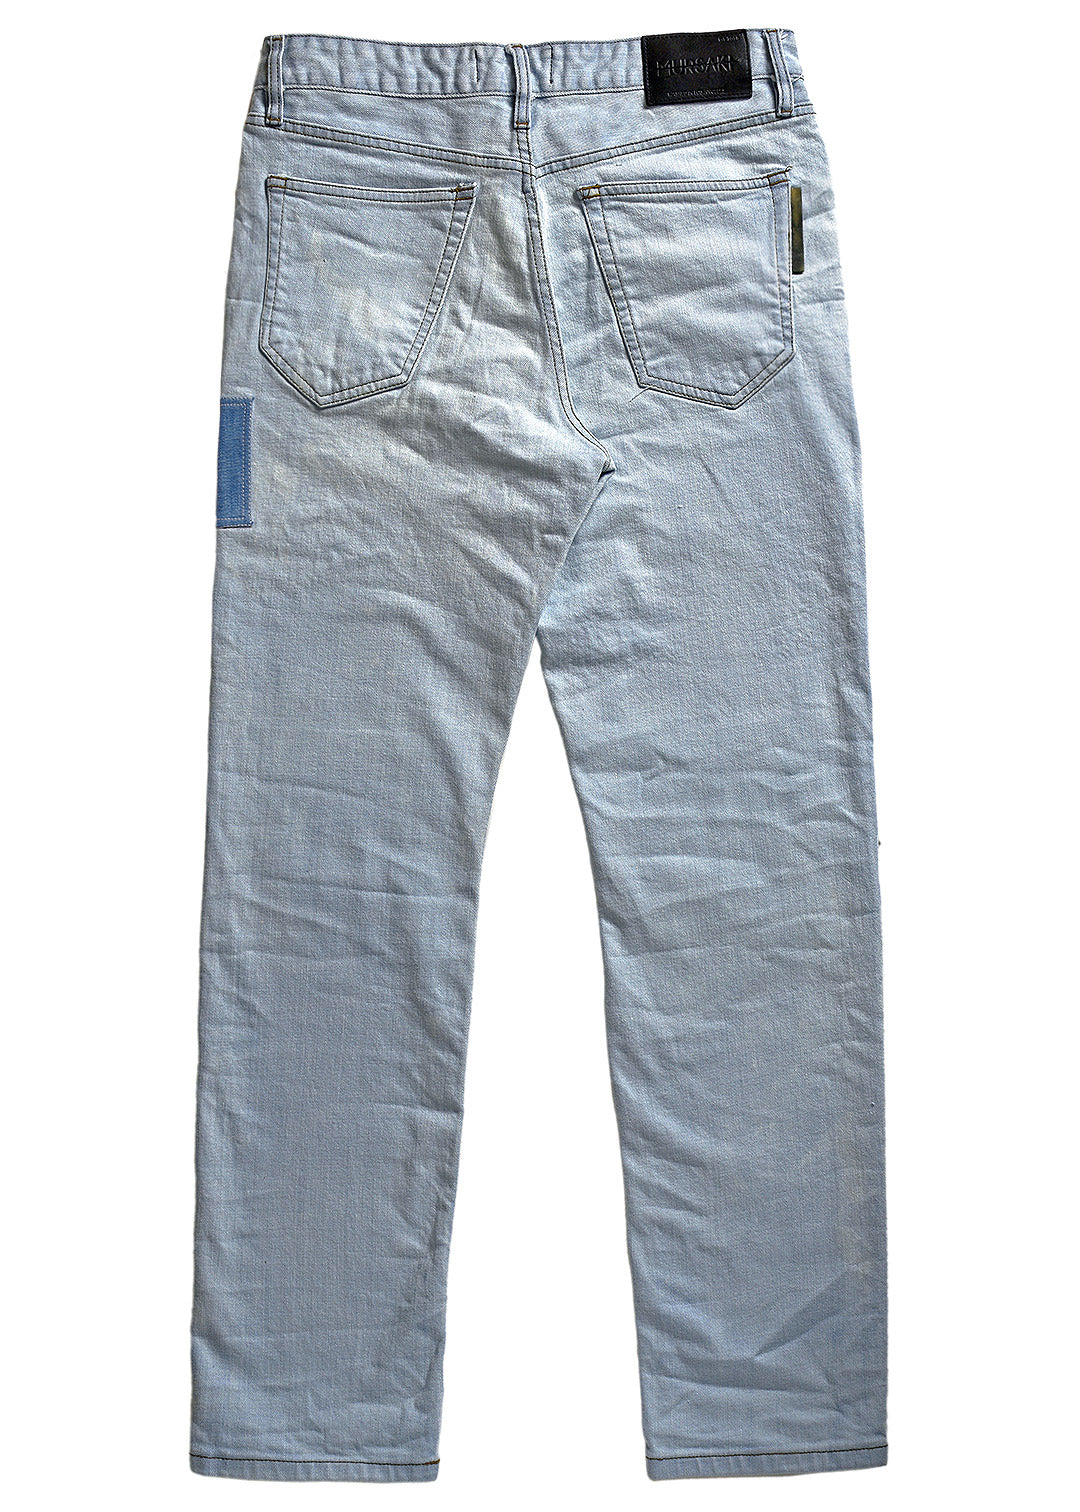 Mursaki Vert Jean 10 Year Fade 339-104